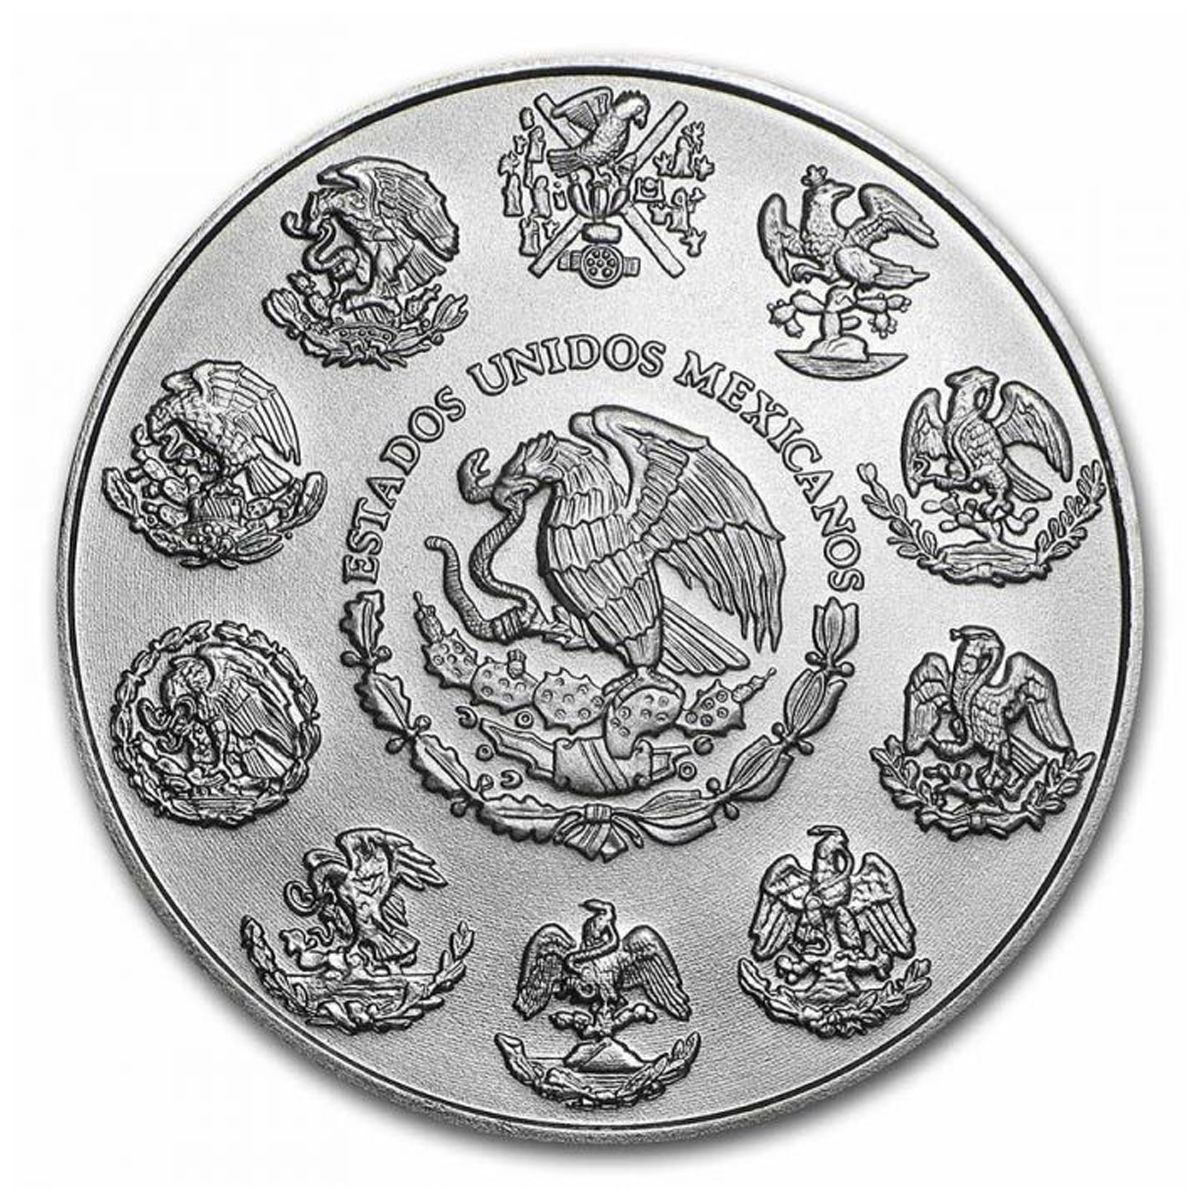 5 oz Silver Coin - Libertad 2022